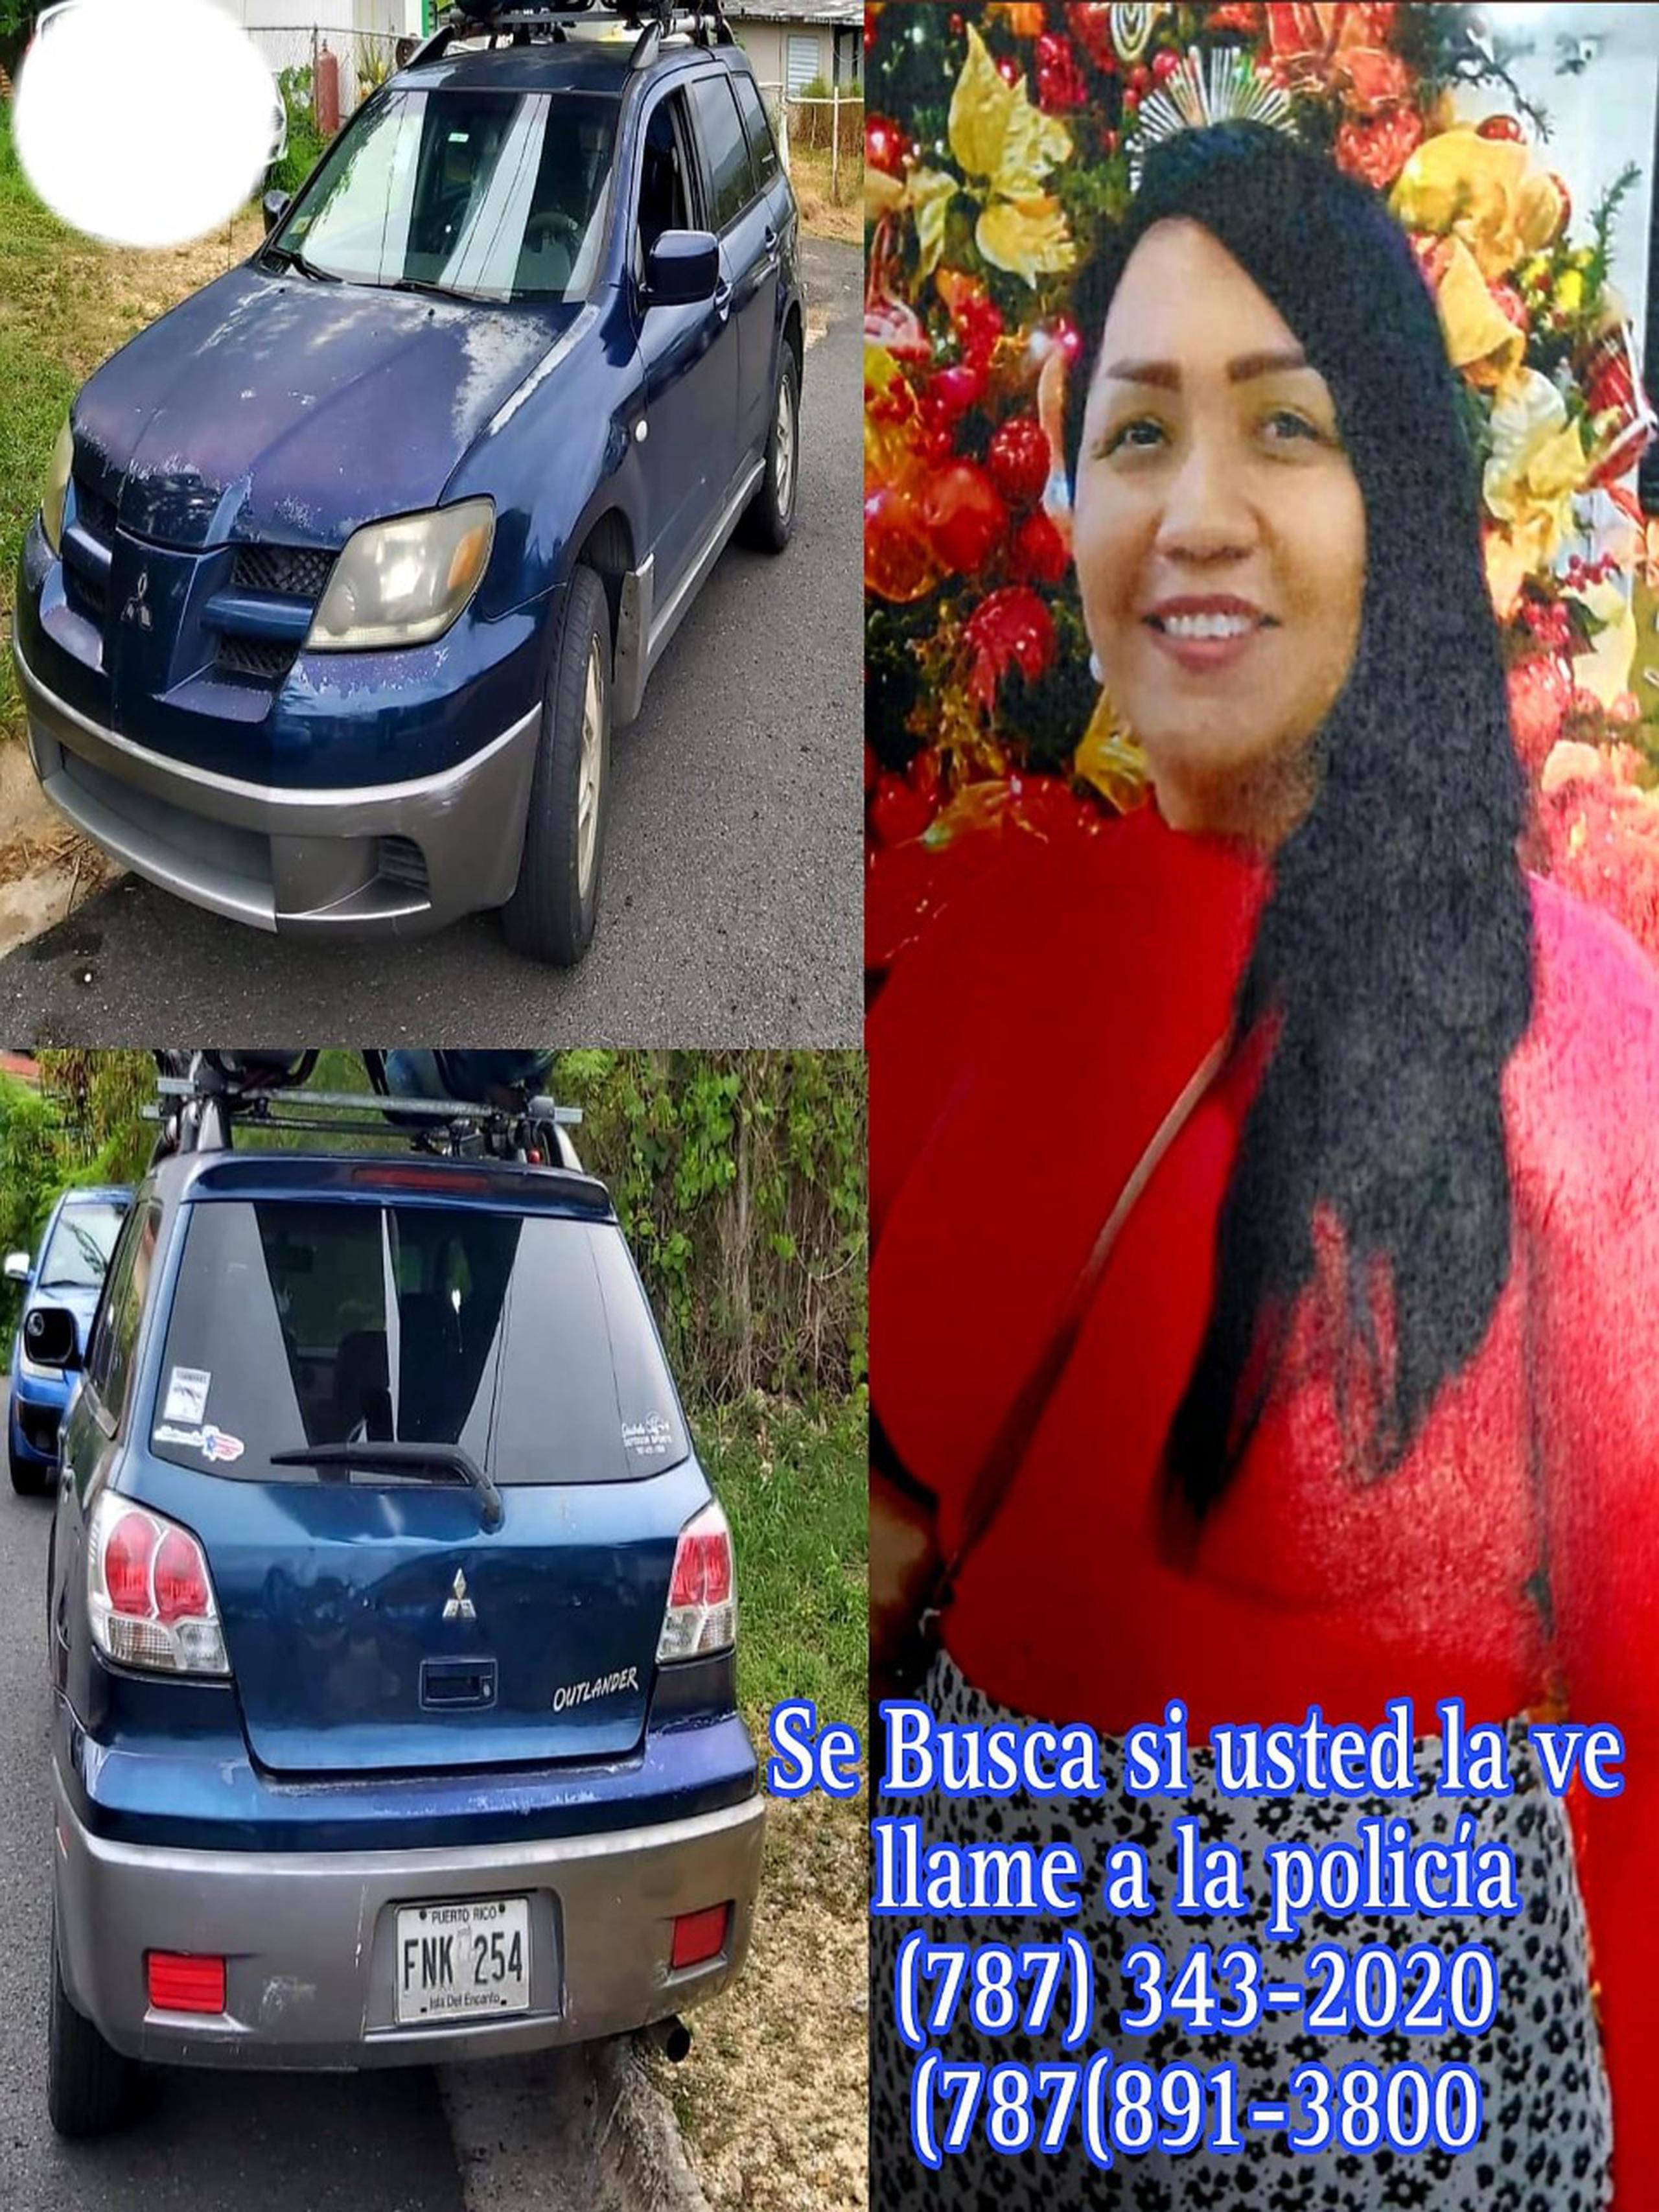 Jessica M. Rodríguez Rodríguez, de 41 años, está desaparecida desde la tarde del miércoles, cuando salió de su residencia en la comunidad Las Flores del barrio Tablonal, en Aguada, y no regresó.